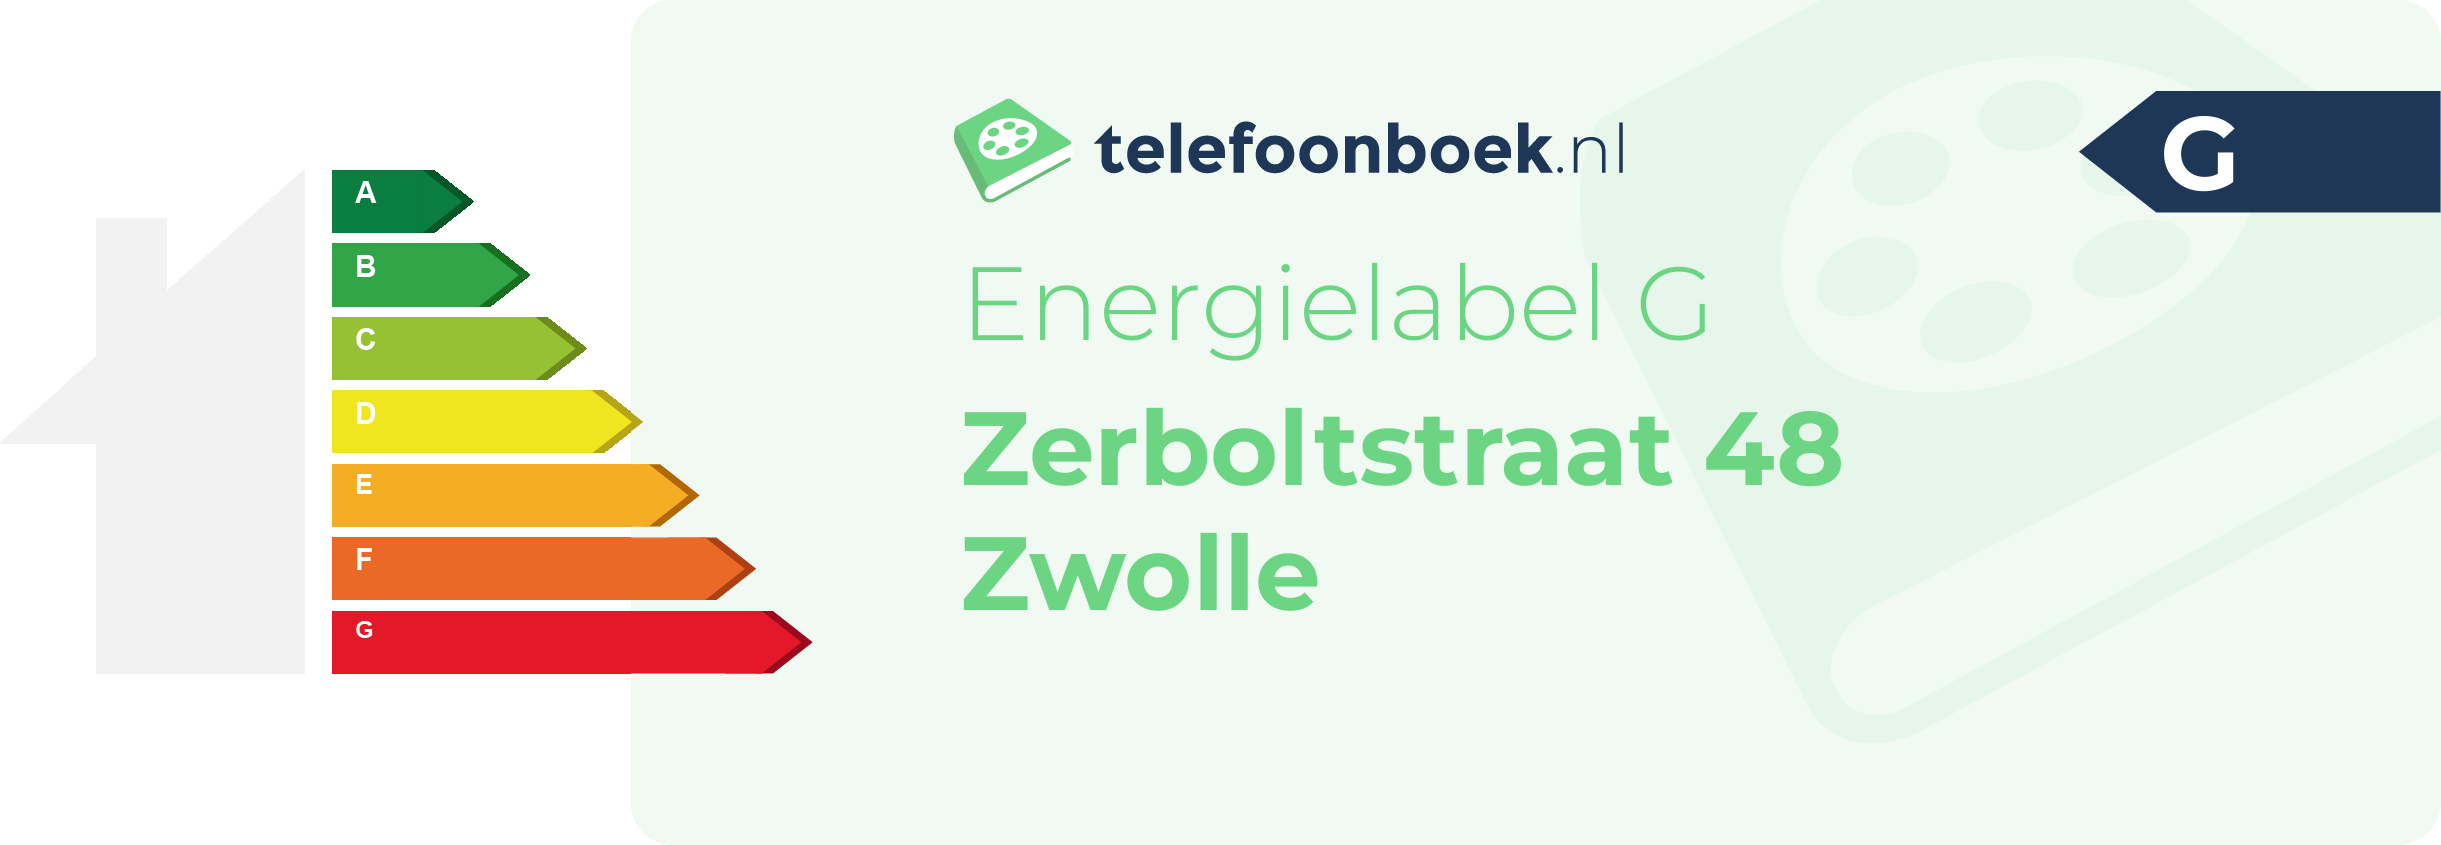 Energielabel Zerboltstraat 48 Zwolle